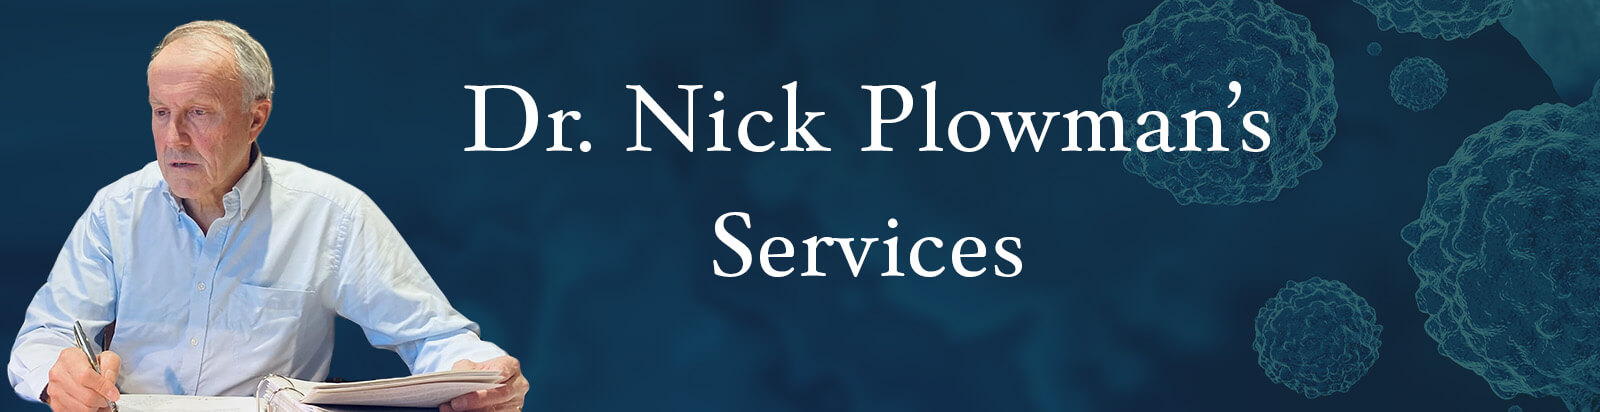 Dr Nick Plowman